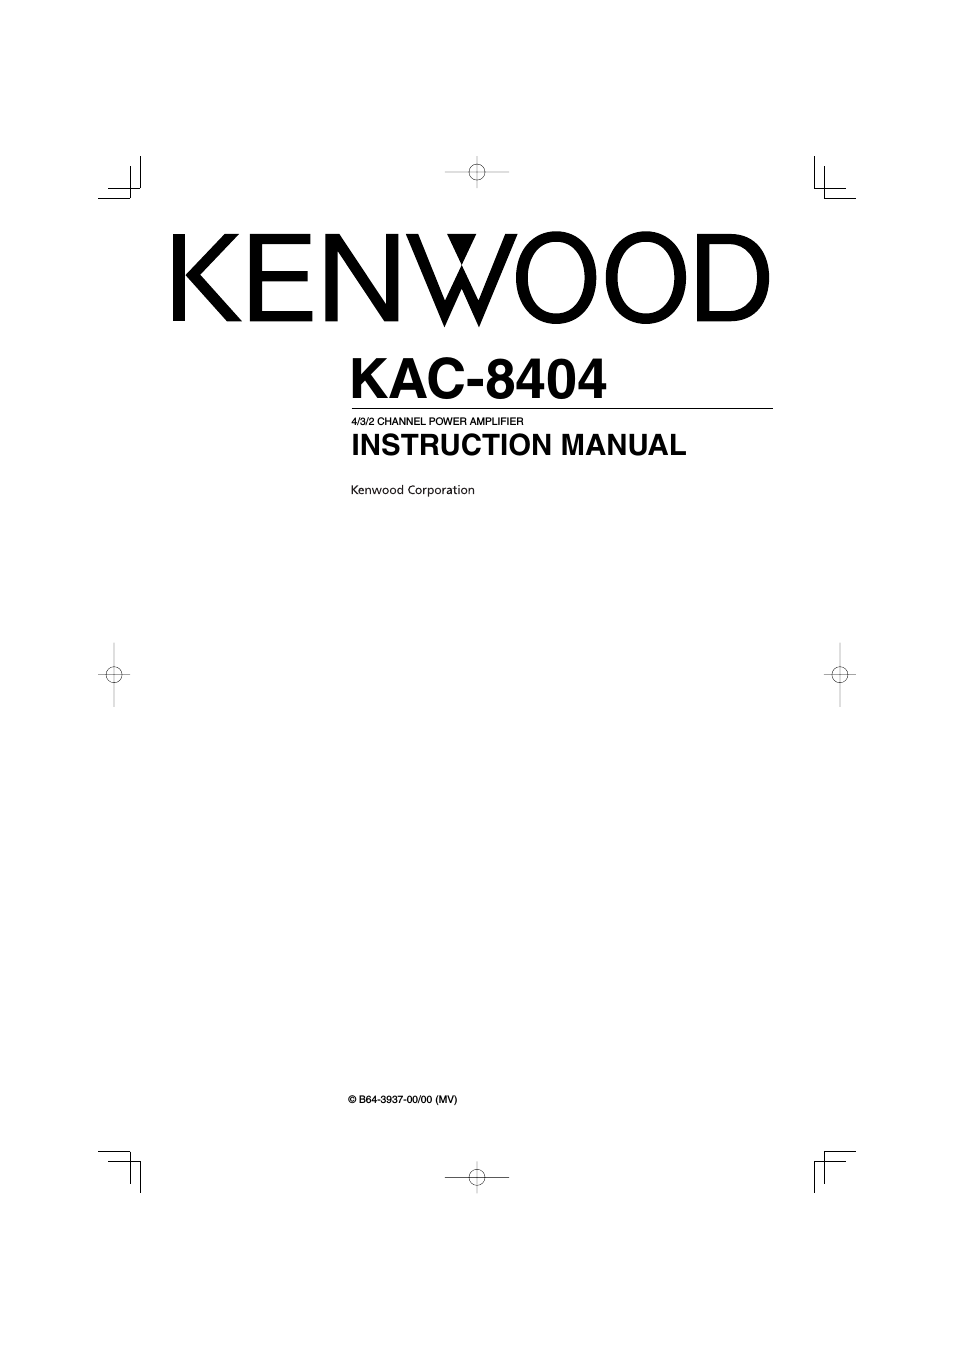 KAC-8404